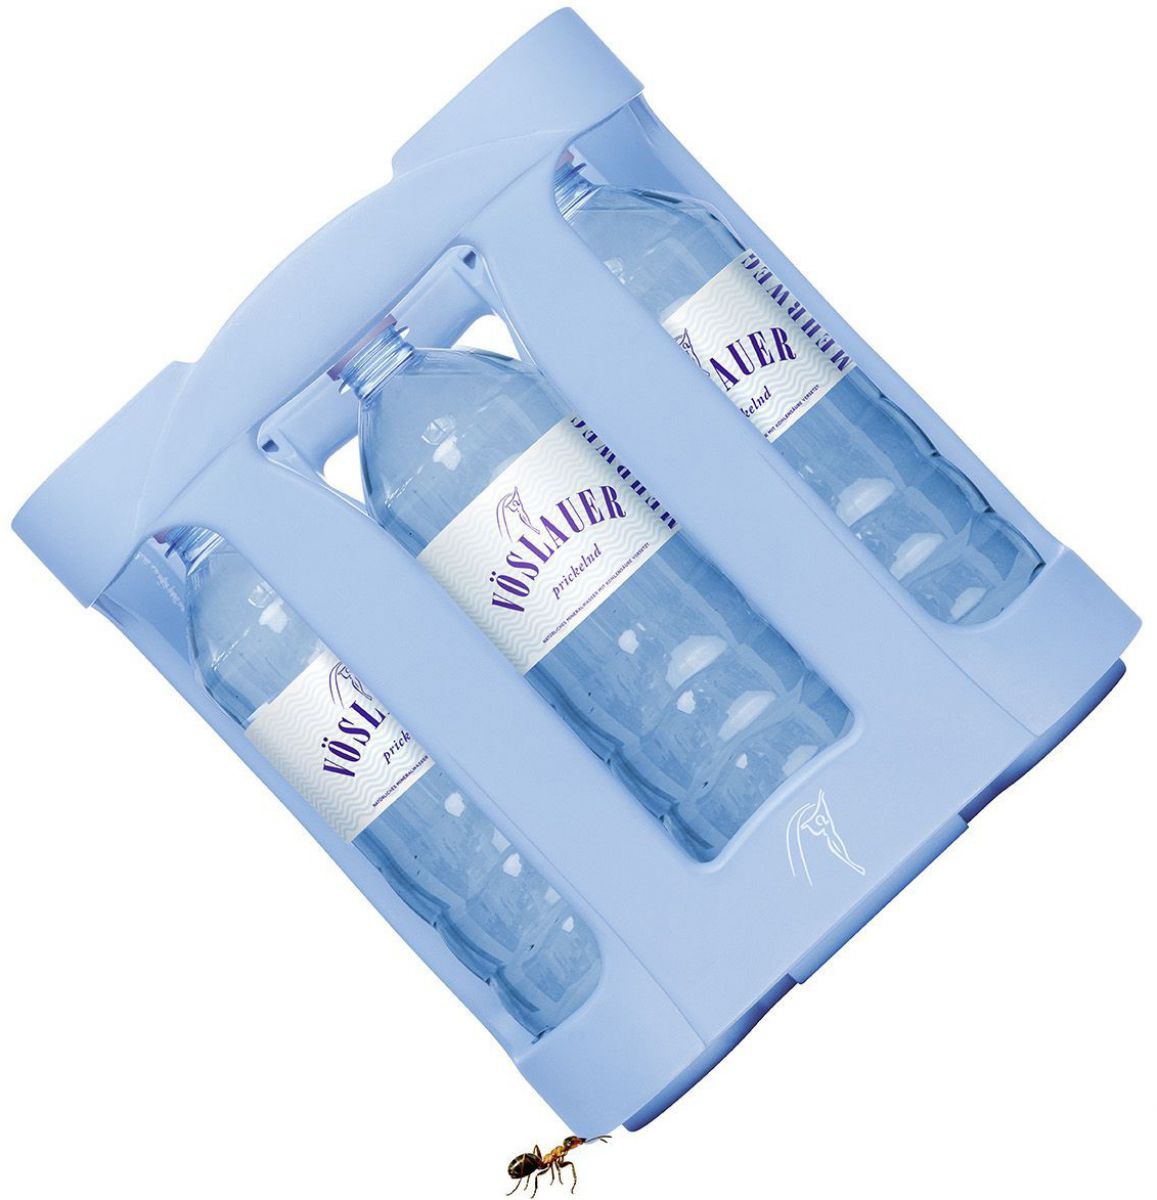 Fotomontage: Eine Ameise trägt eine Kiste mit 9 PET-Mehrwegflaschen Marke Vöslauer.